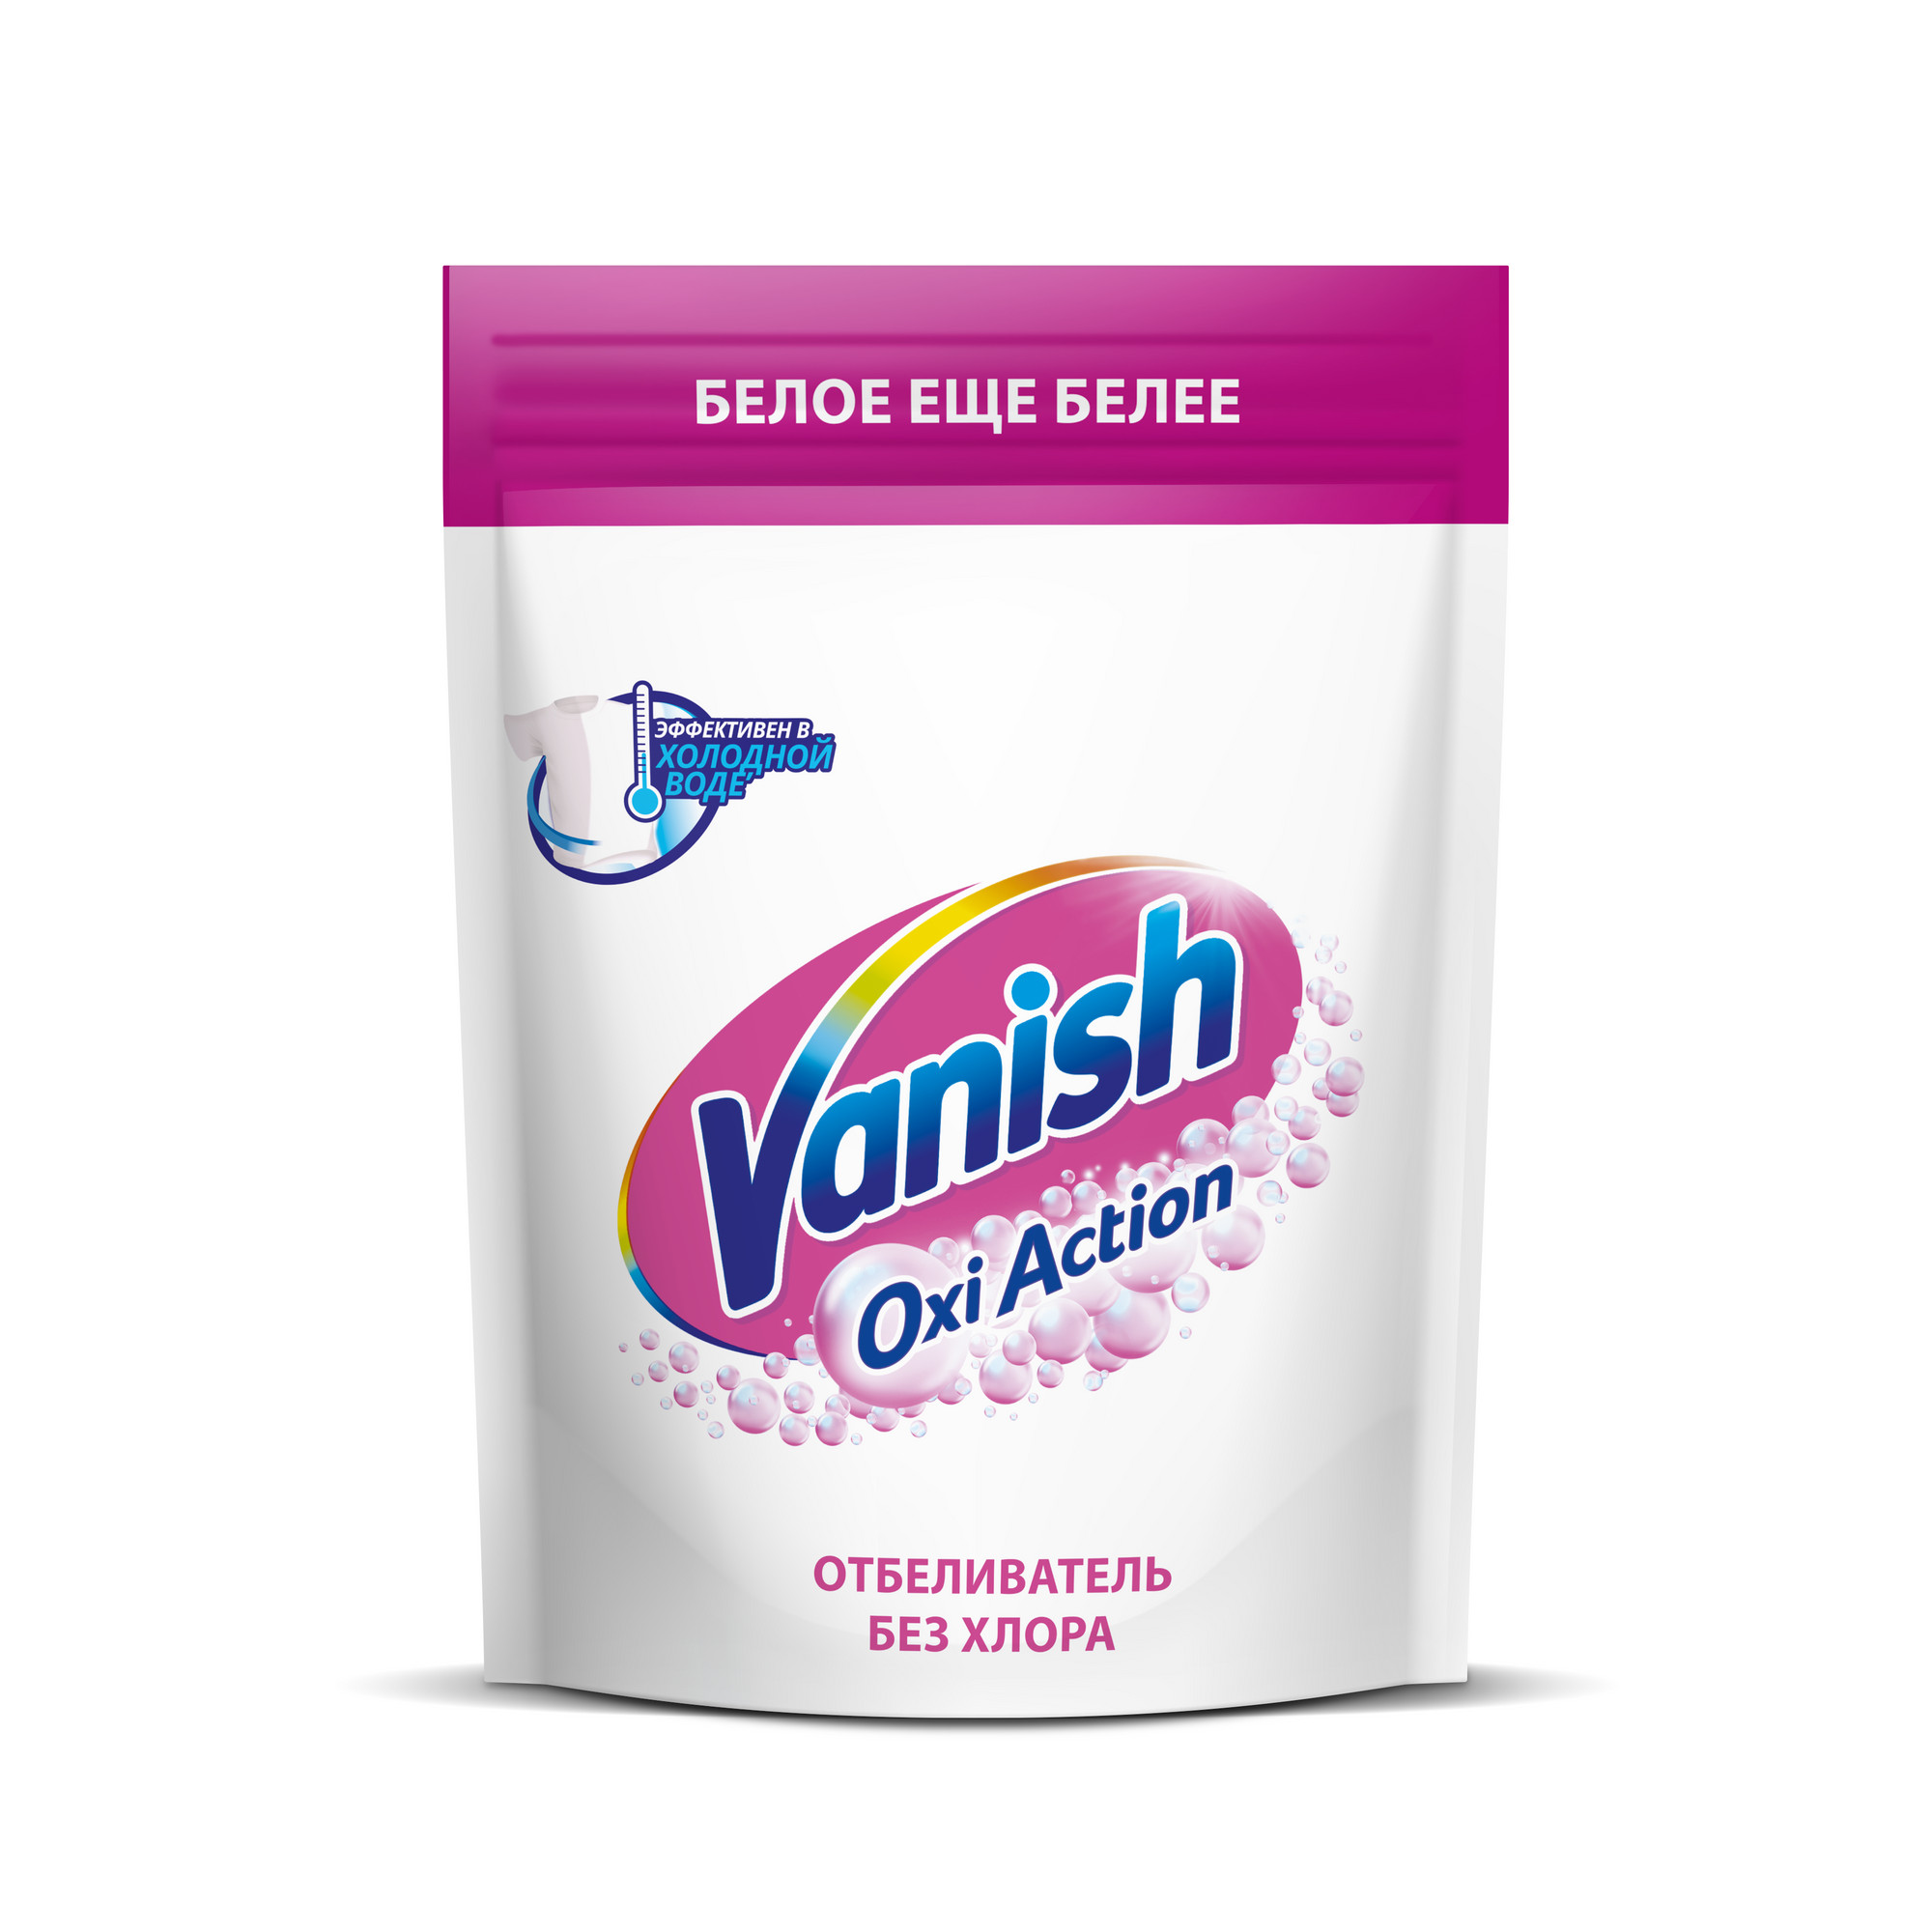 Пятновыводитель Vanish Oxi Action Кристальная белизна для тканей порошкообразный 500 г пятновыводитель vanish oxi action кристальная белизна порошкообразный 1 кг